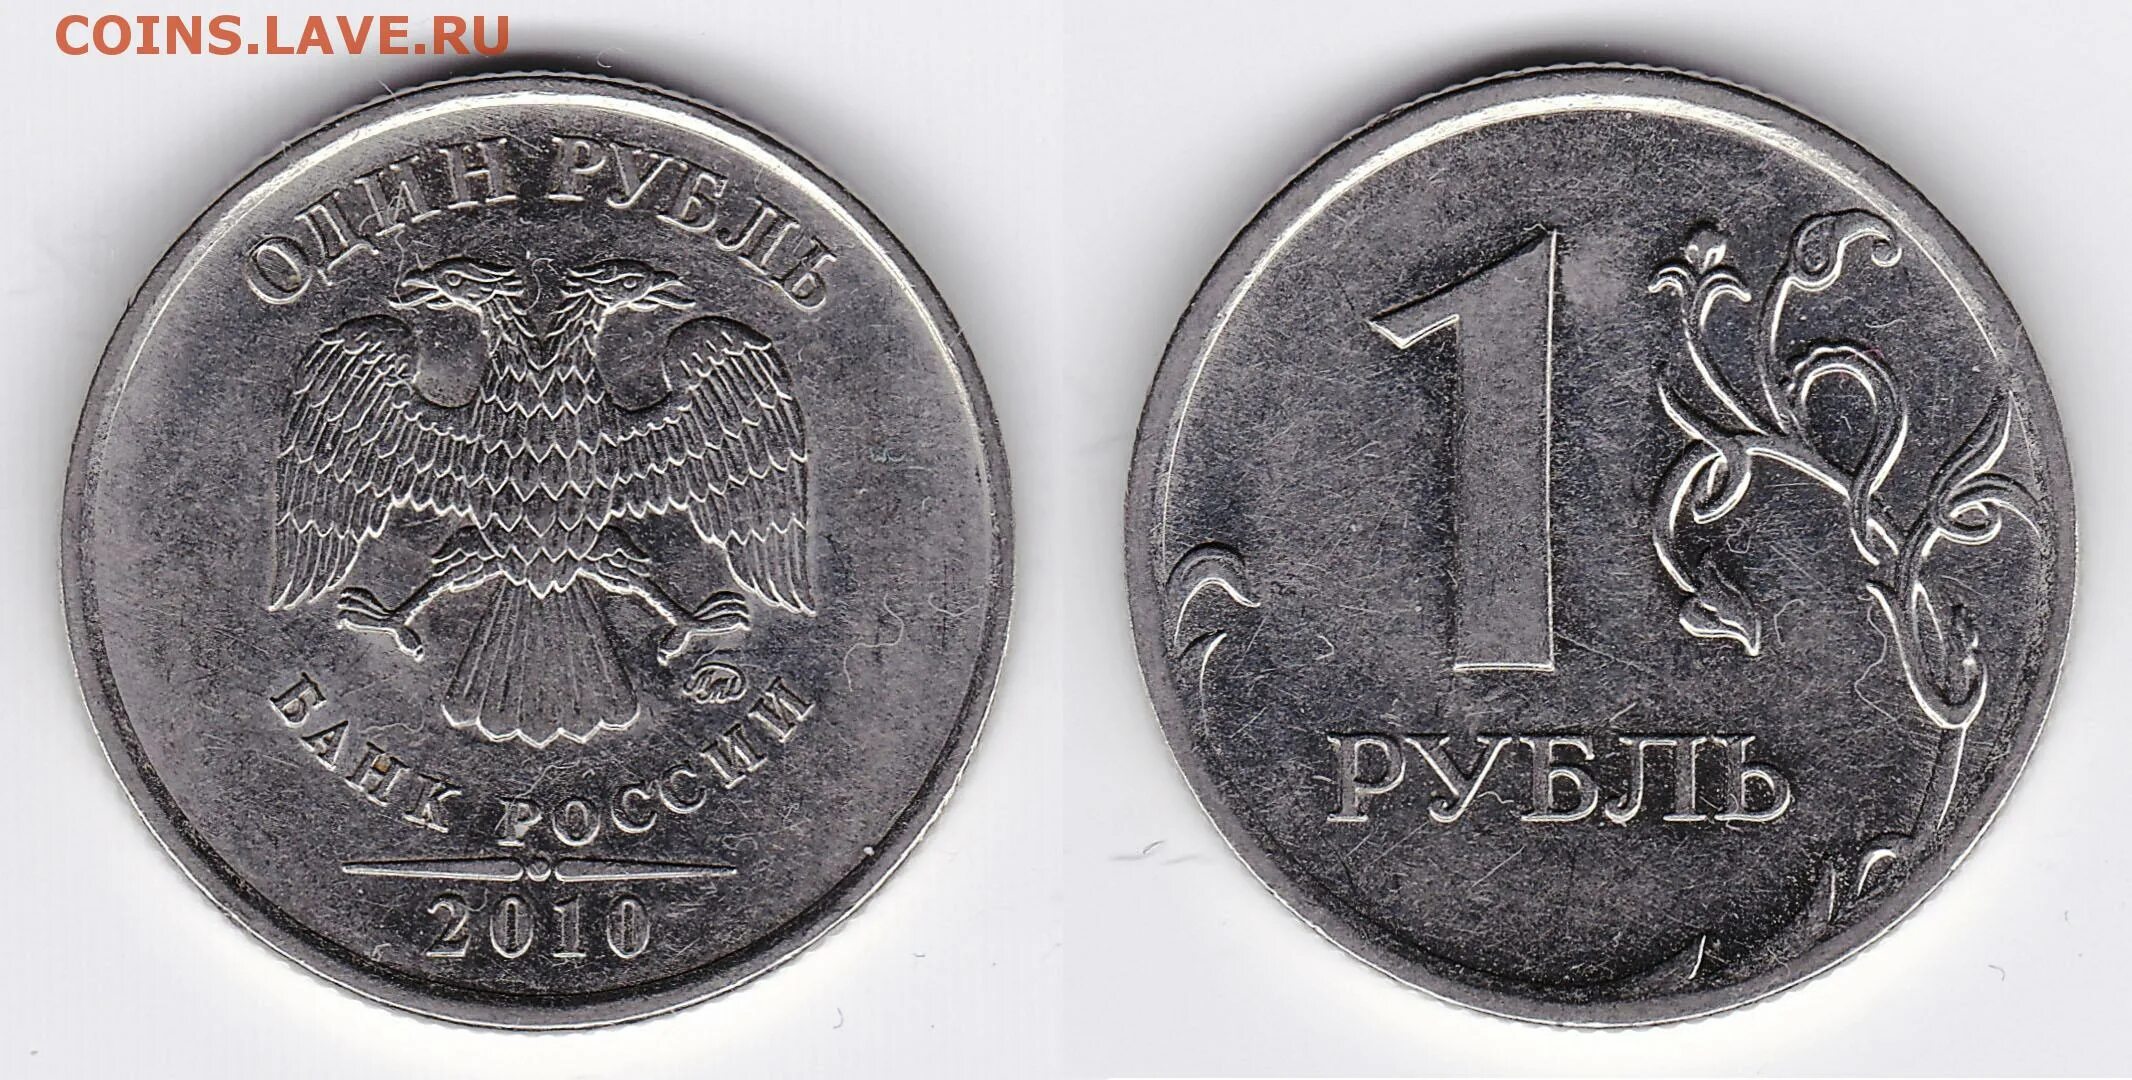 Монета 1 рубль 2014. Монета 1 рубль 2010 СПМД. Монета 1 рубль с буквой р. Вес рубля 2014 года.